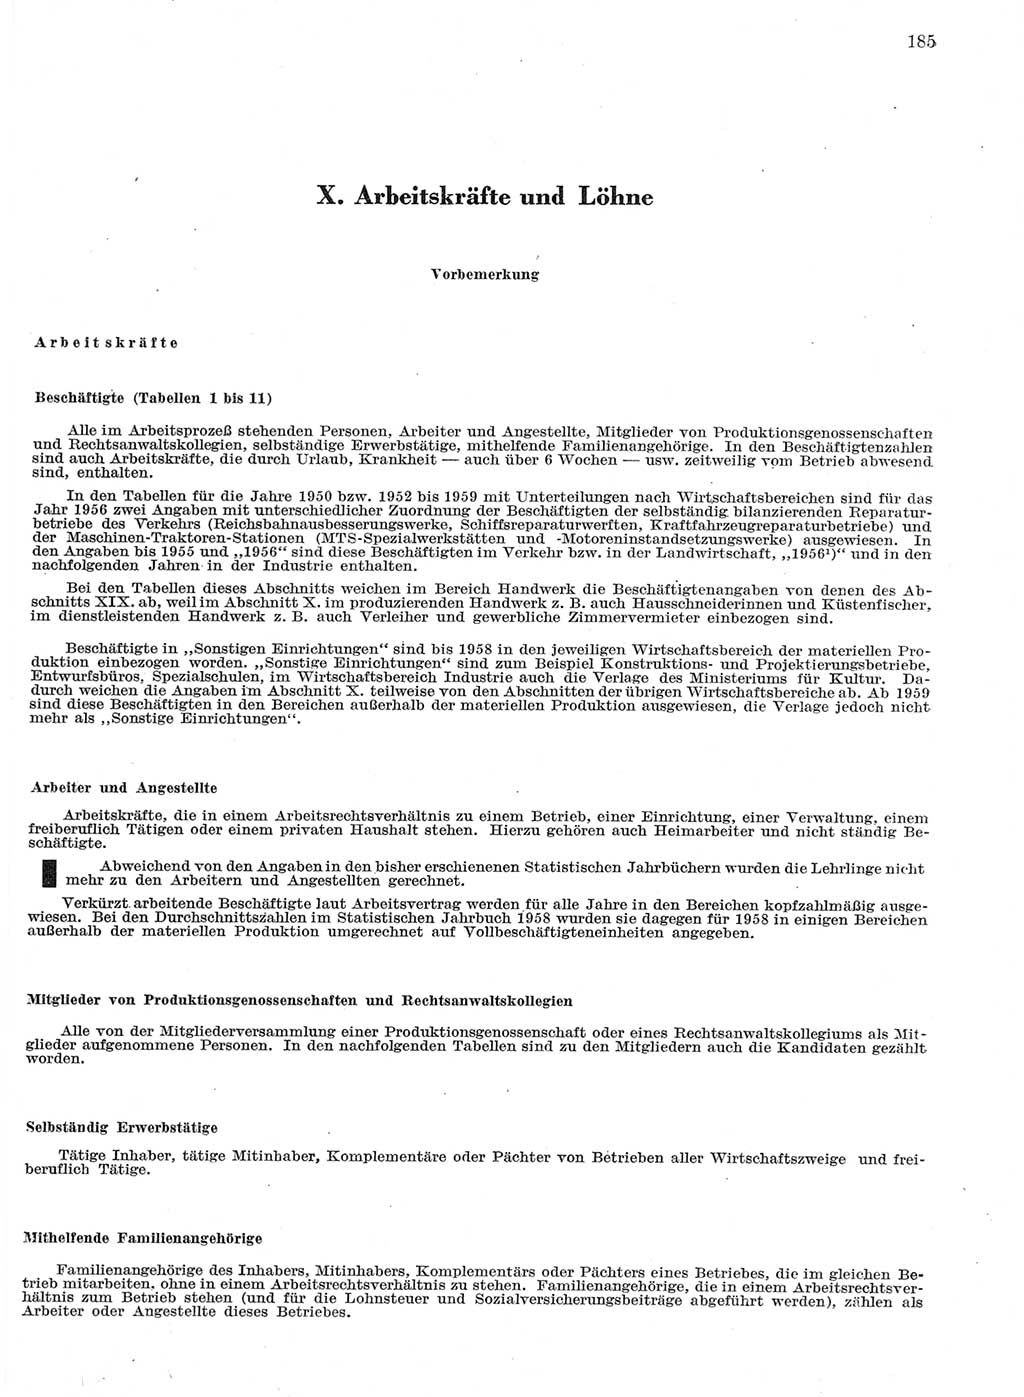 Statistisches Jahrbuch der Deutschen Demokratischen Republik (DDR) 1959, Seite 185 (Stat. Jb. DDR 1959, S. 185)